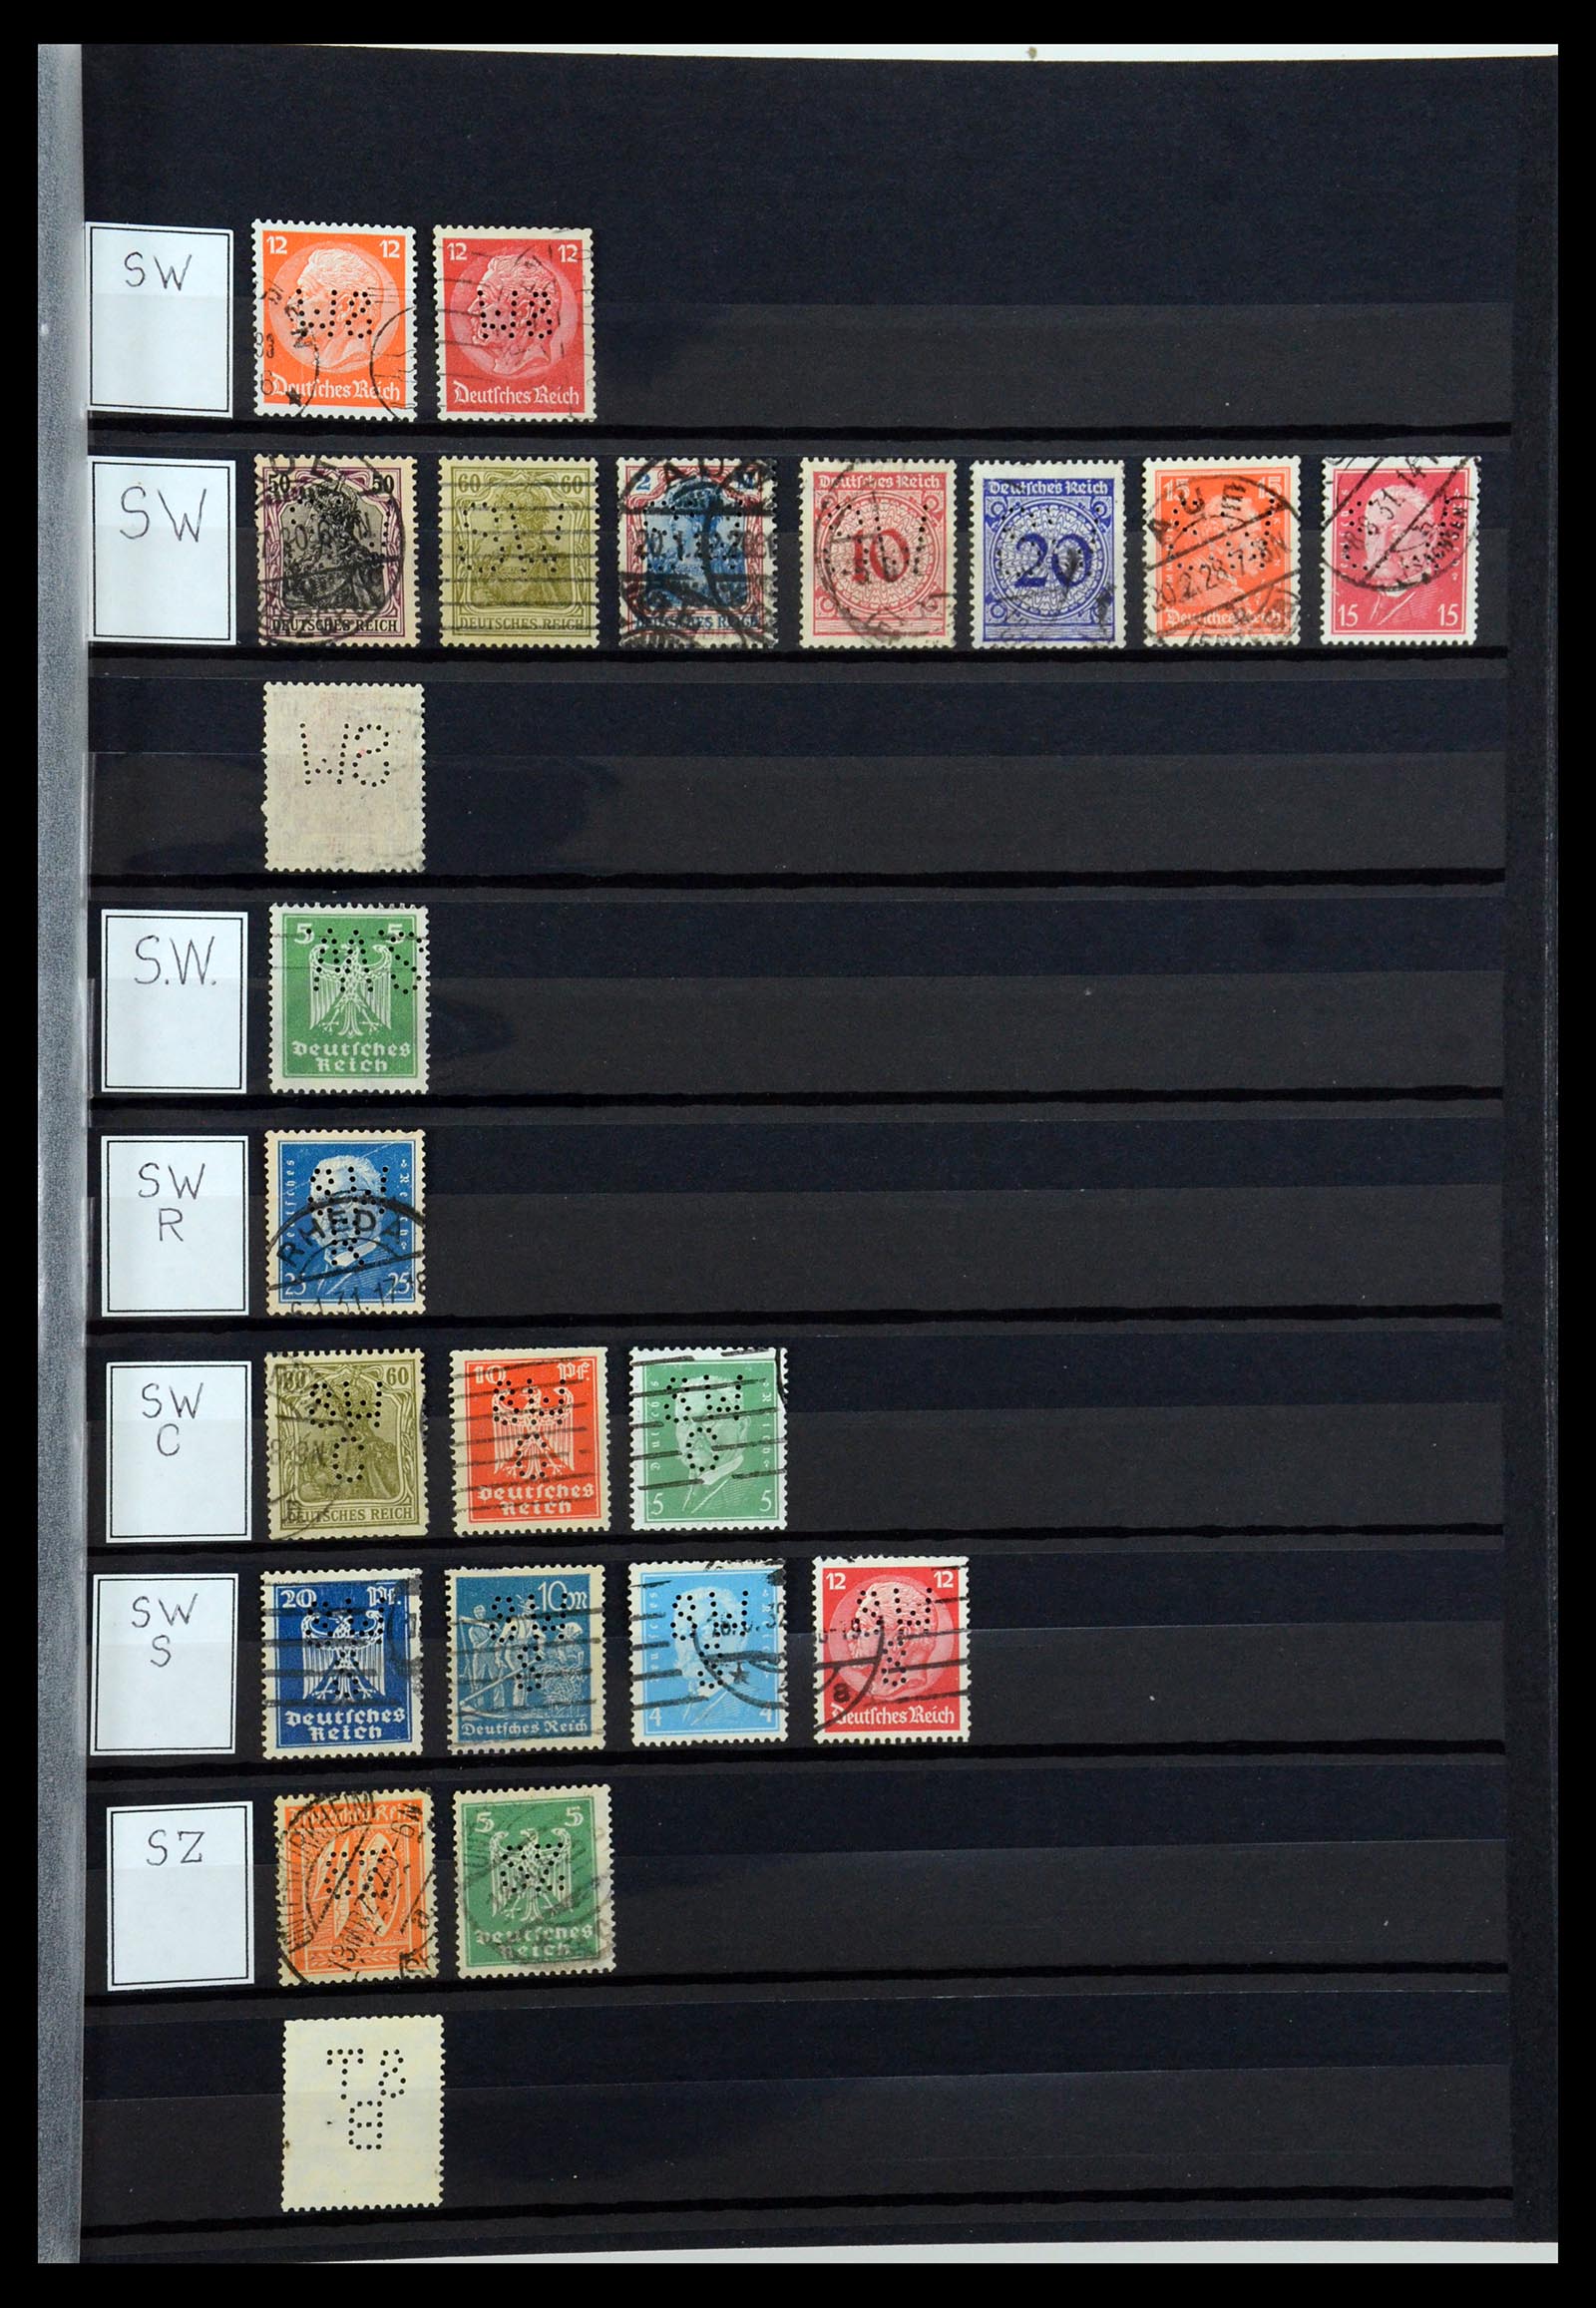 36405 302 - Stamp collection 36405 German Reich perfins 1880-1945.